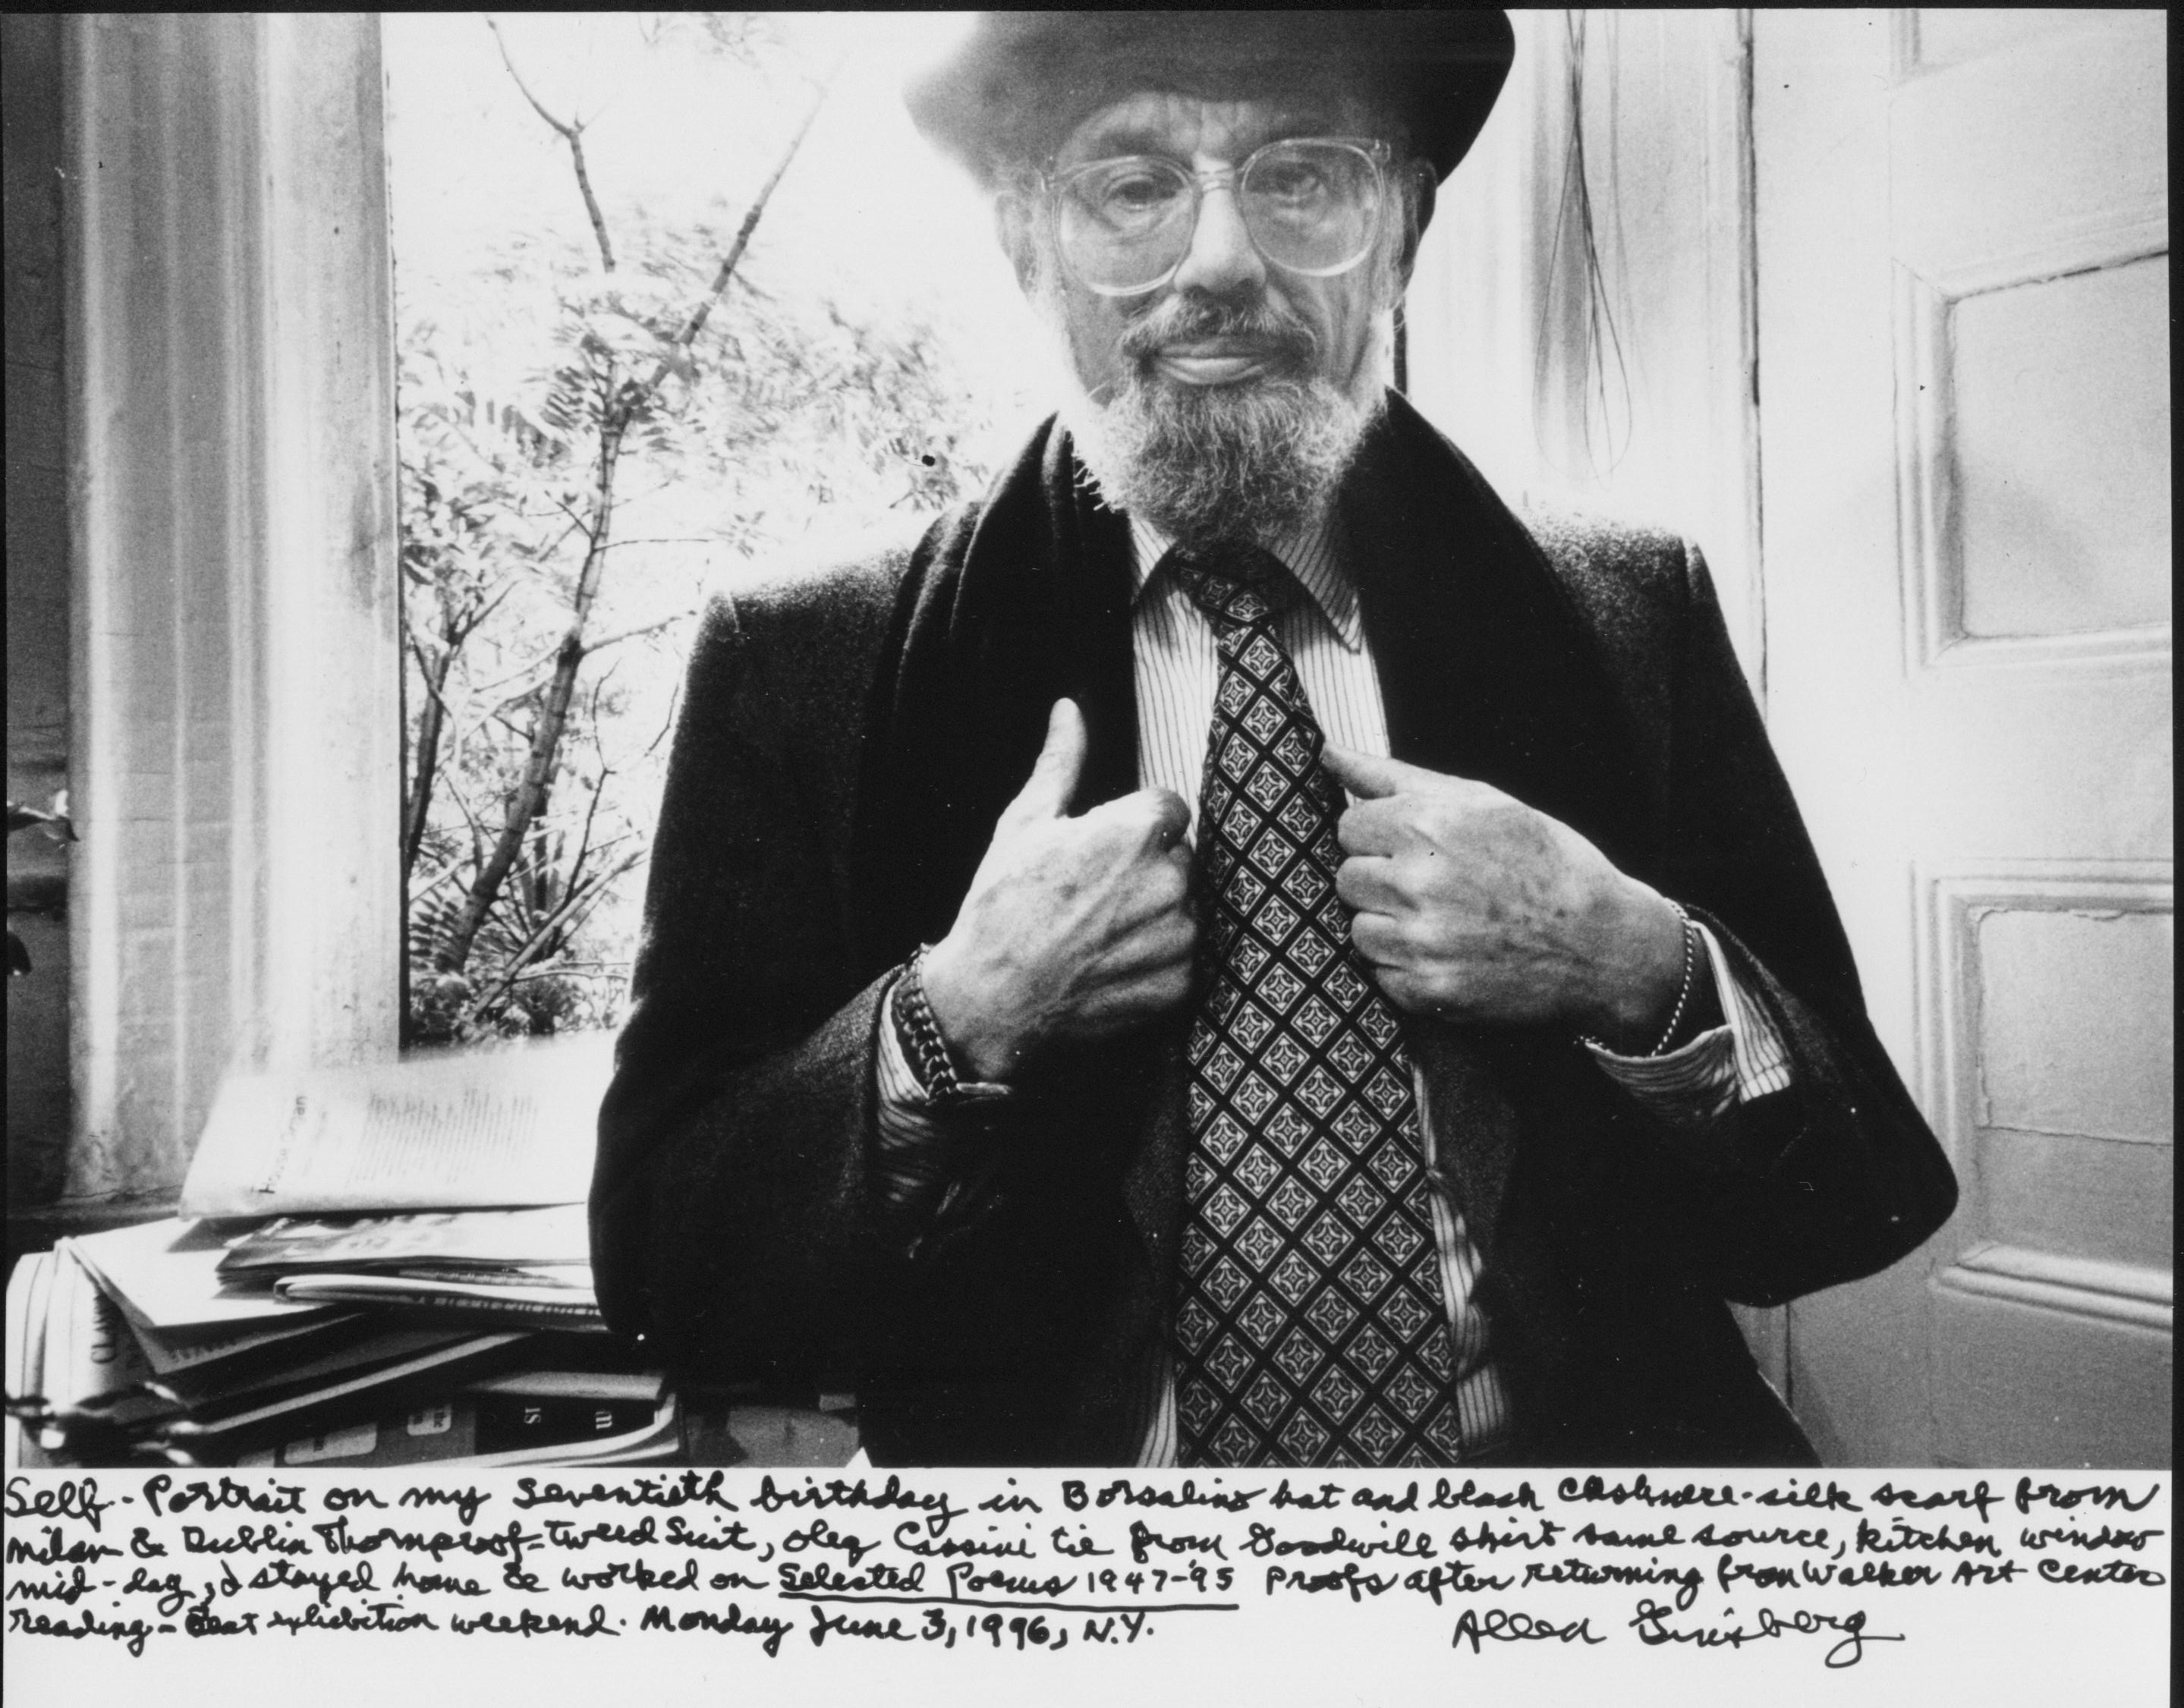 Allen Ginsberg Photographs